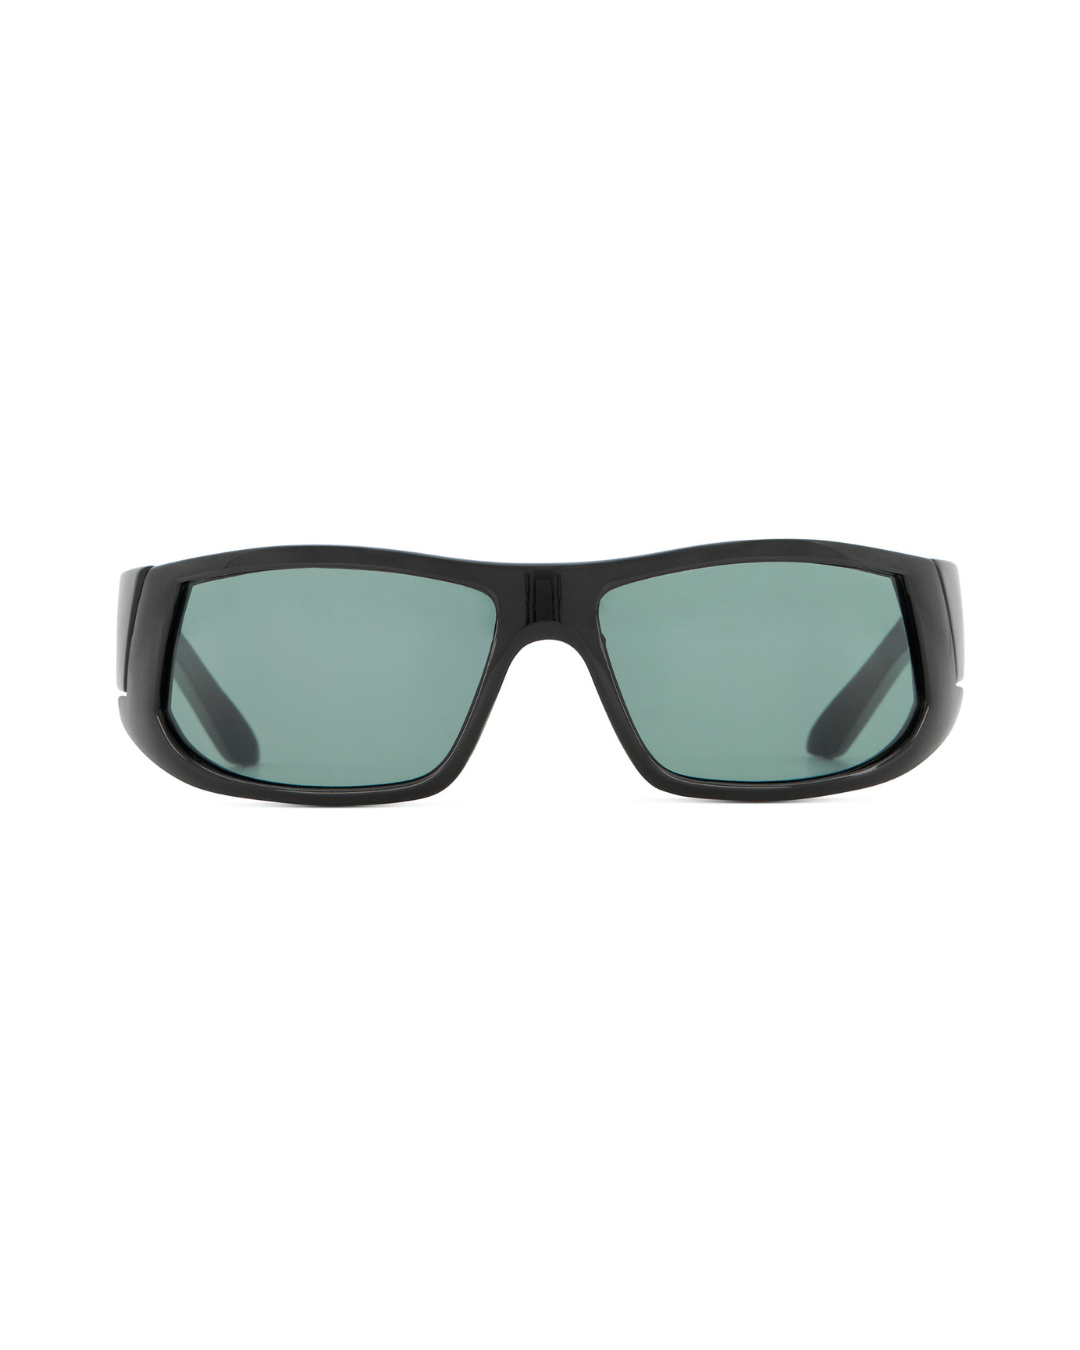 Black Sport Shield Sunglasses - American Deadstock